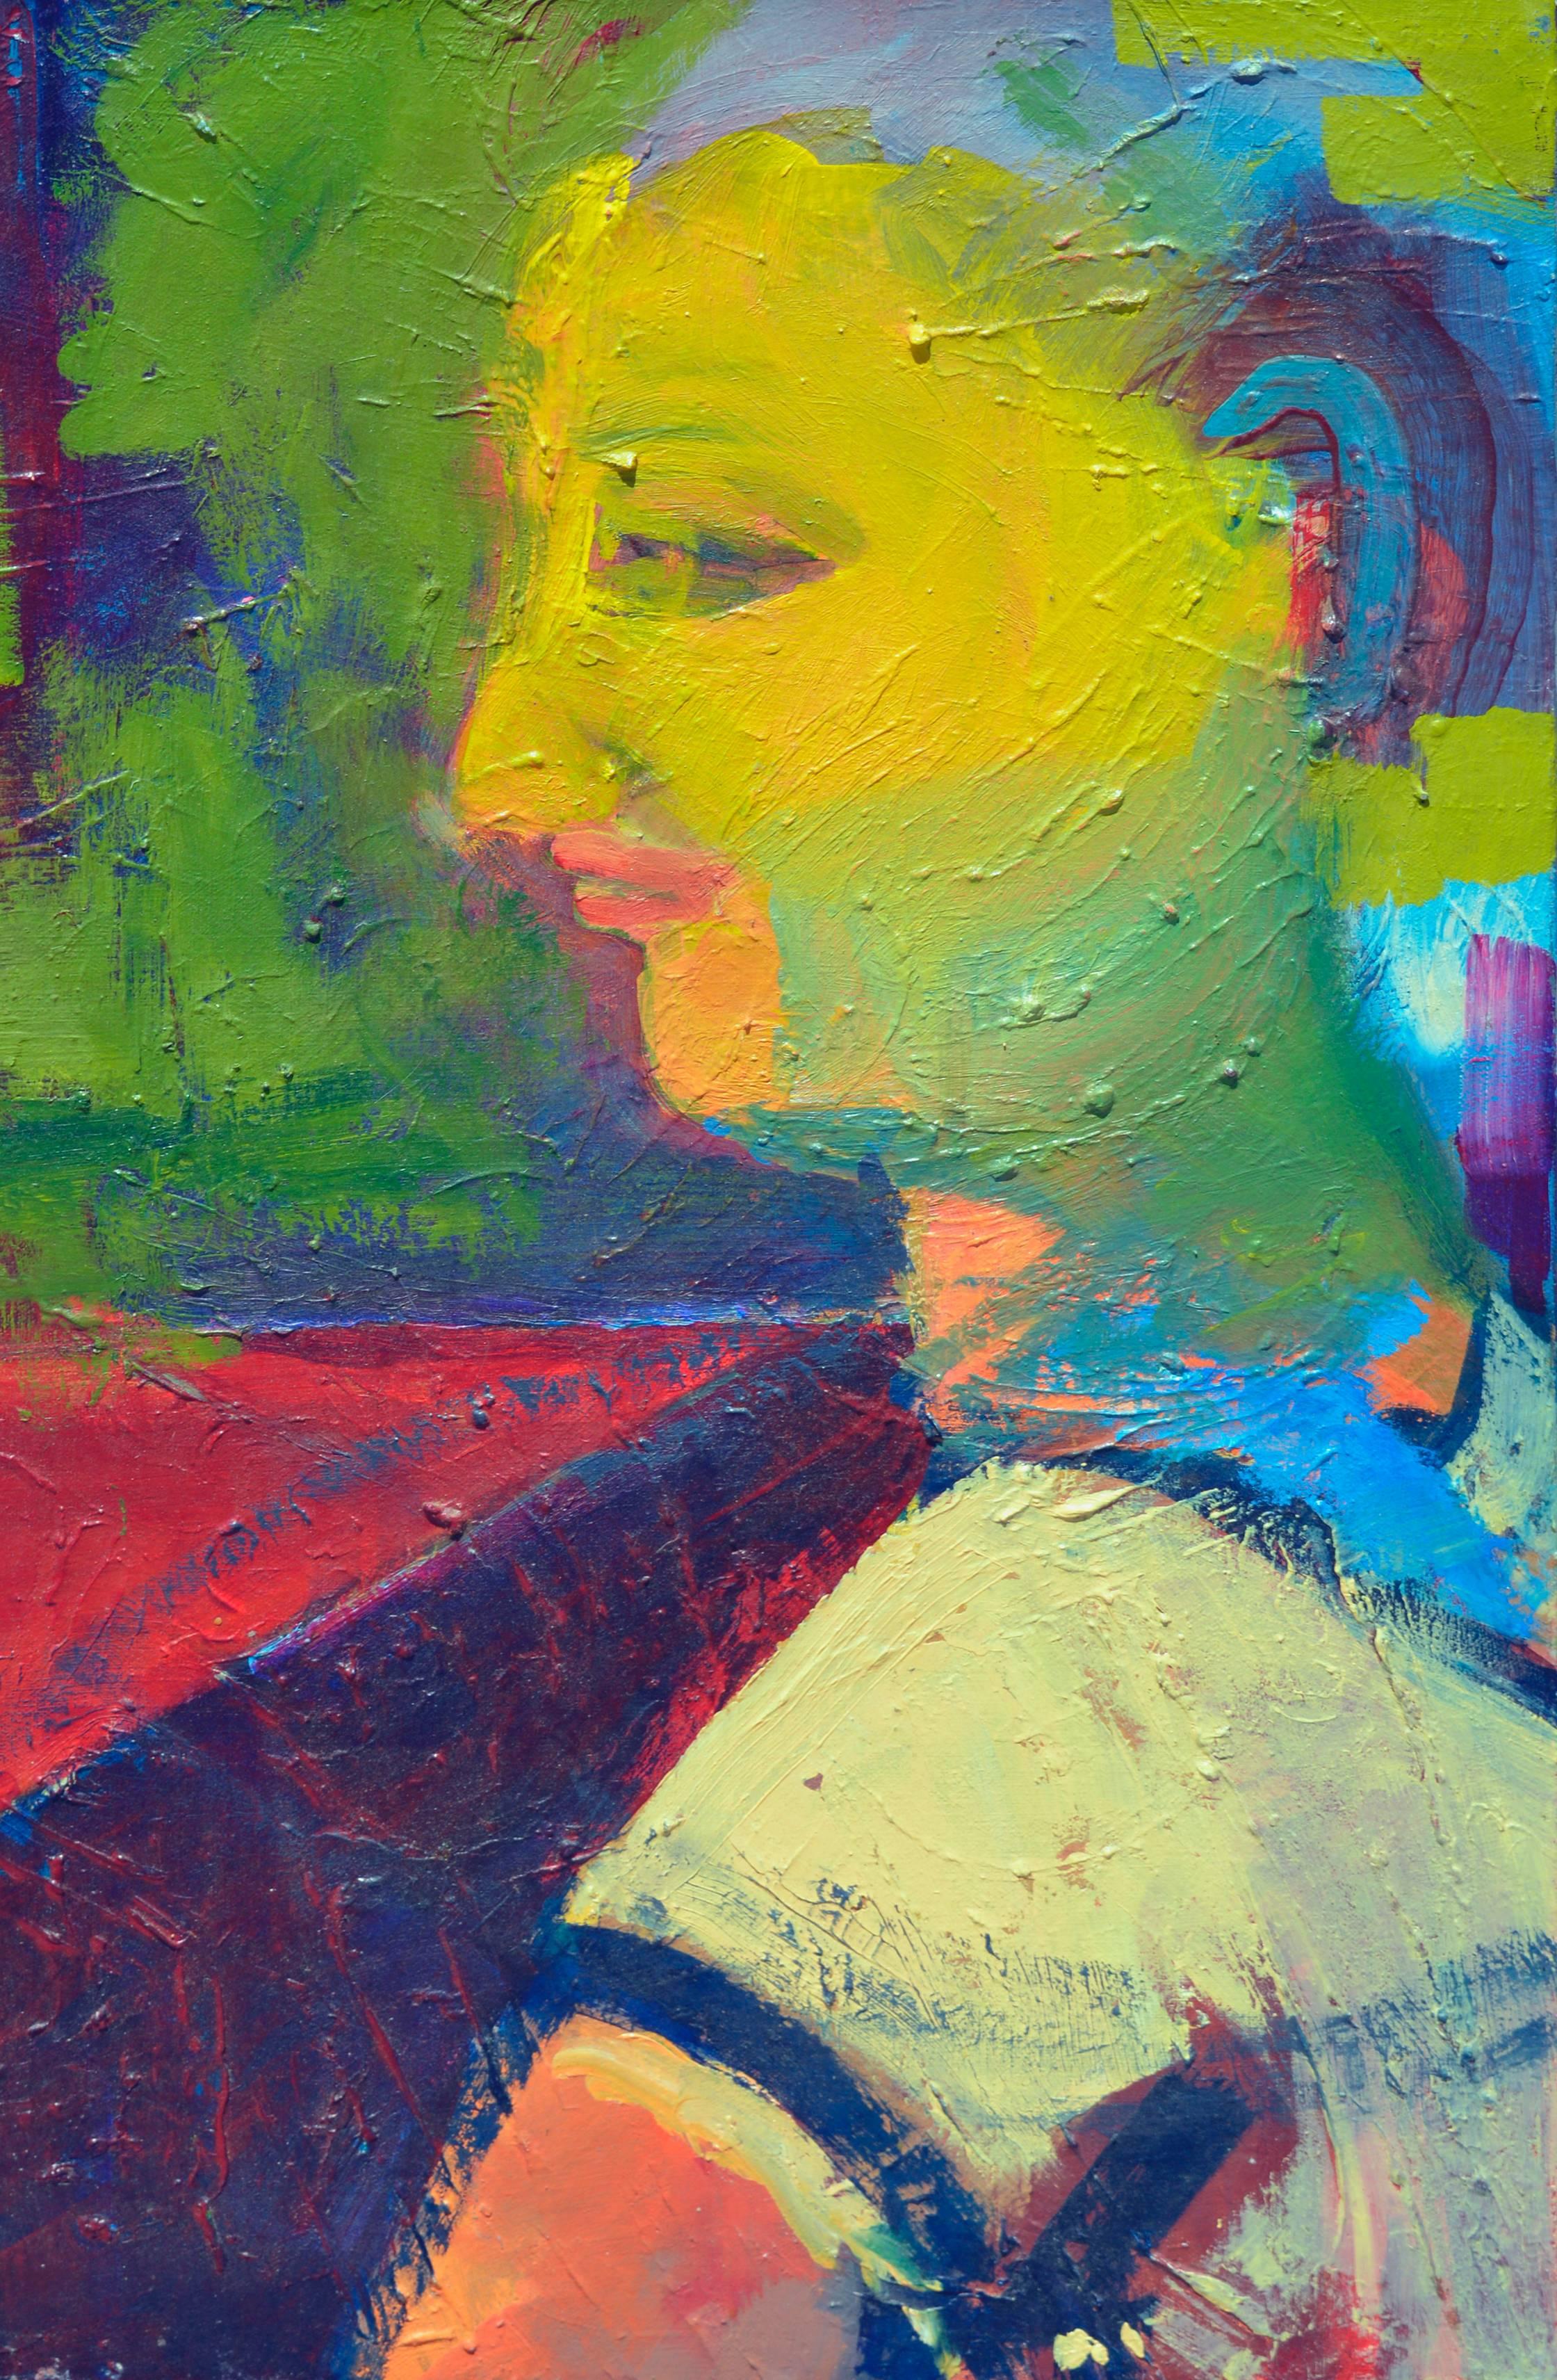 Fauvistisches abstrakt-expressionistisches Porträt, Kind in Hühnergarbe – Painting von Kristin Cohen